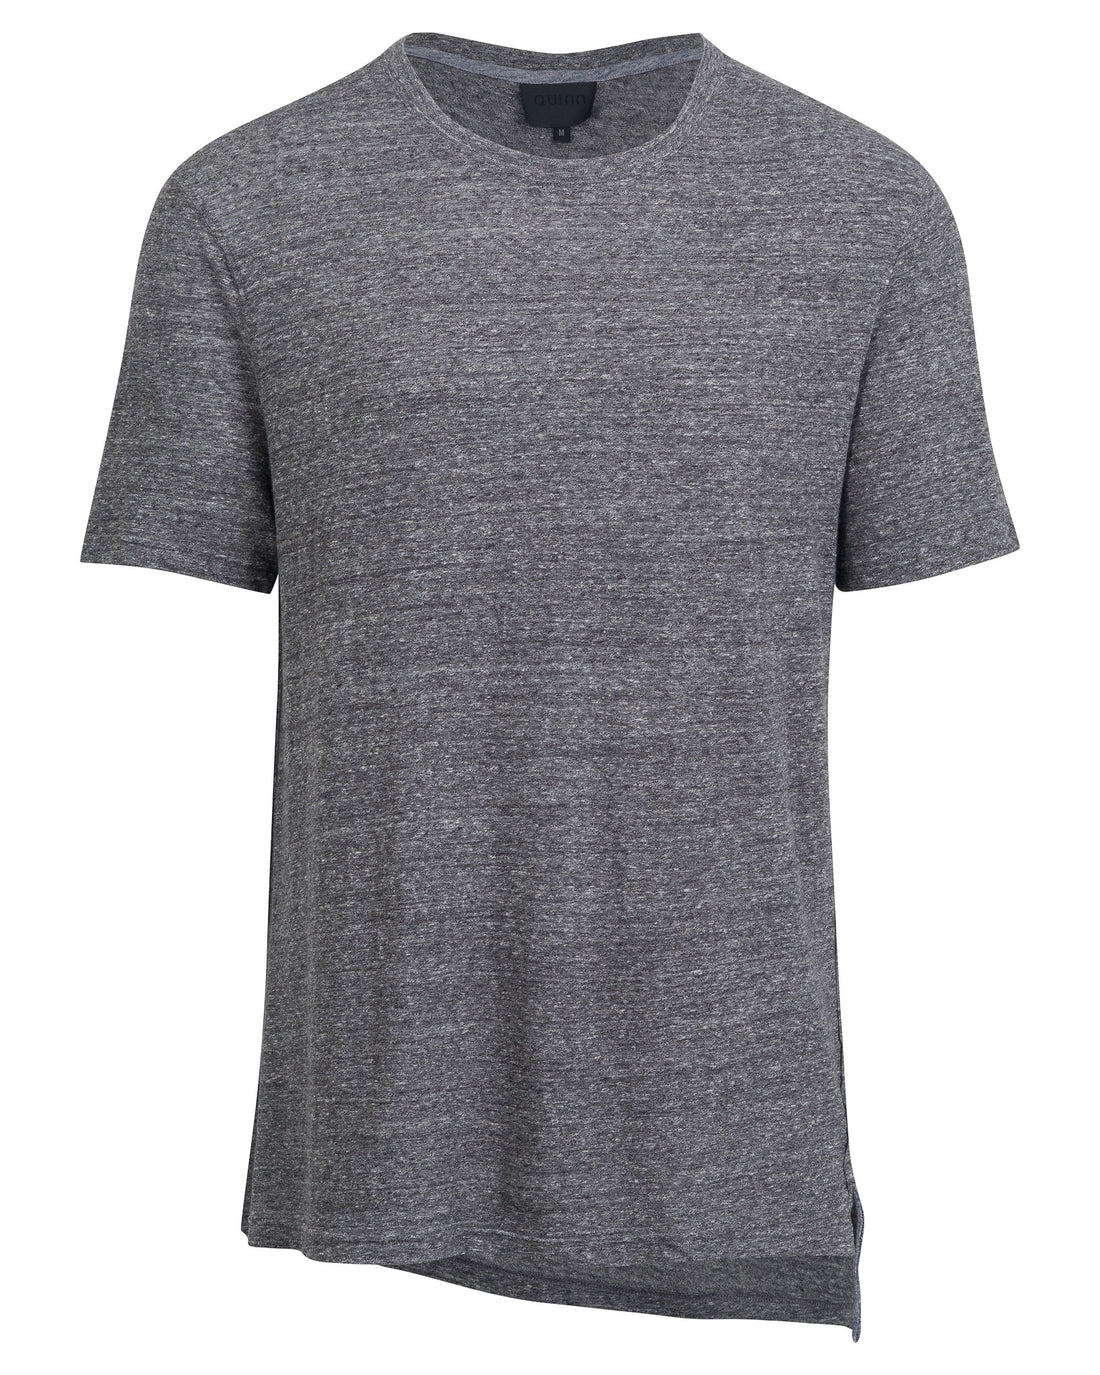 Walden Asymmetrical T-Shirt